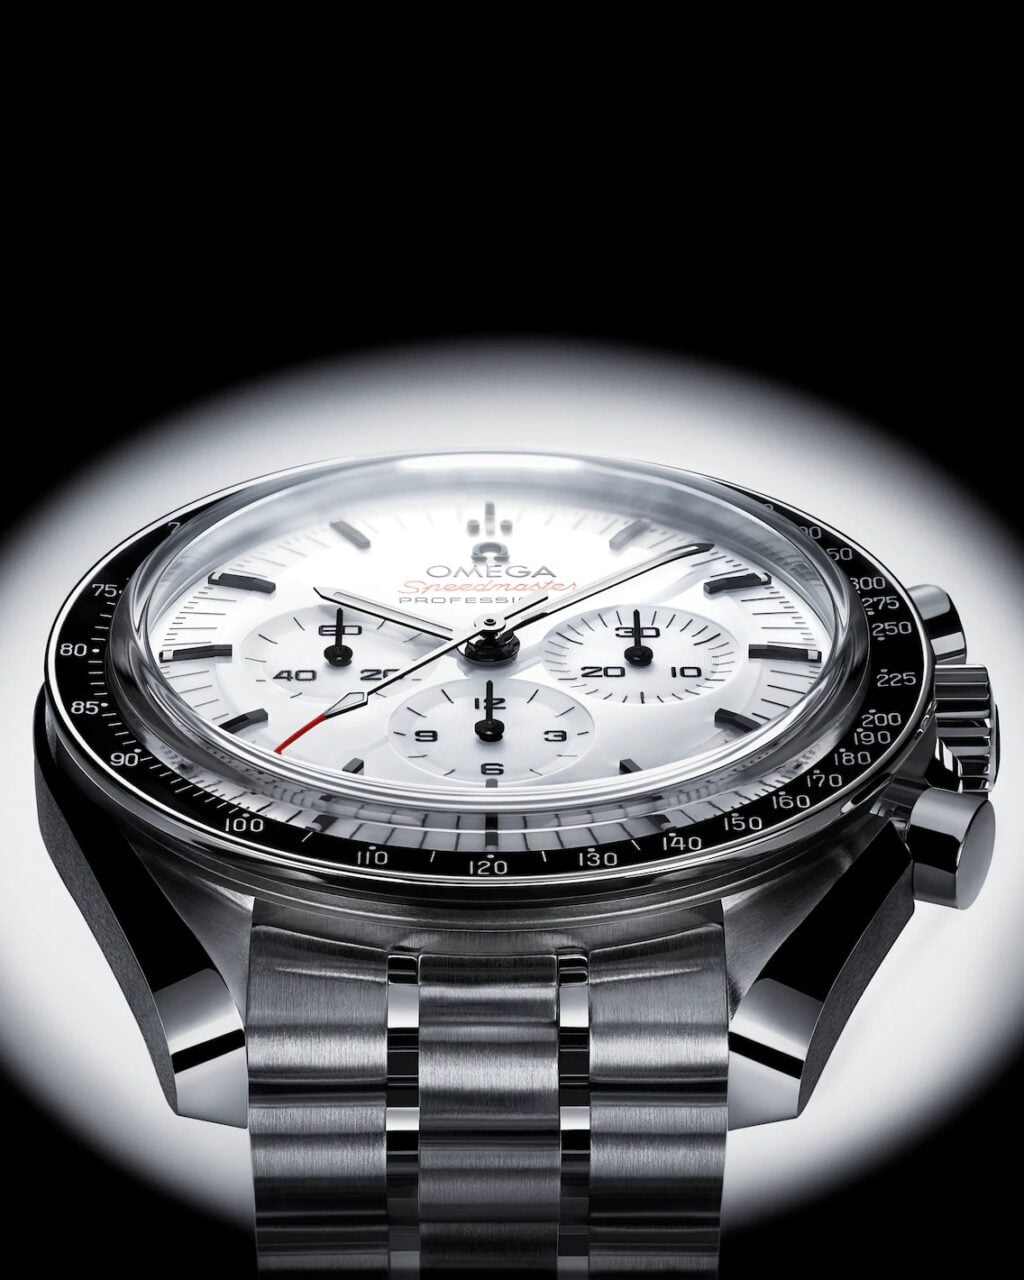 Zegarek męski Omega Speedmaster Professional z białą tarczą, trzema małymi tarczami zapasowymi i stalową bransoletą.